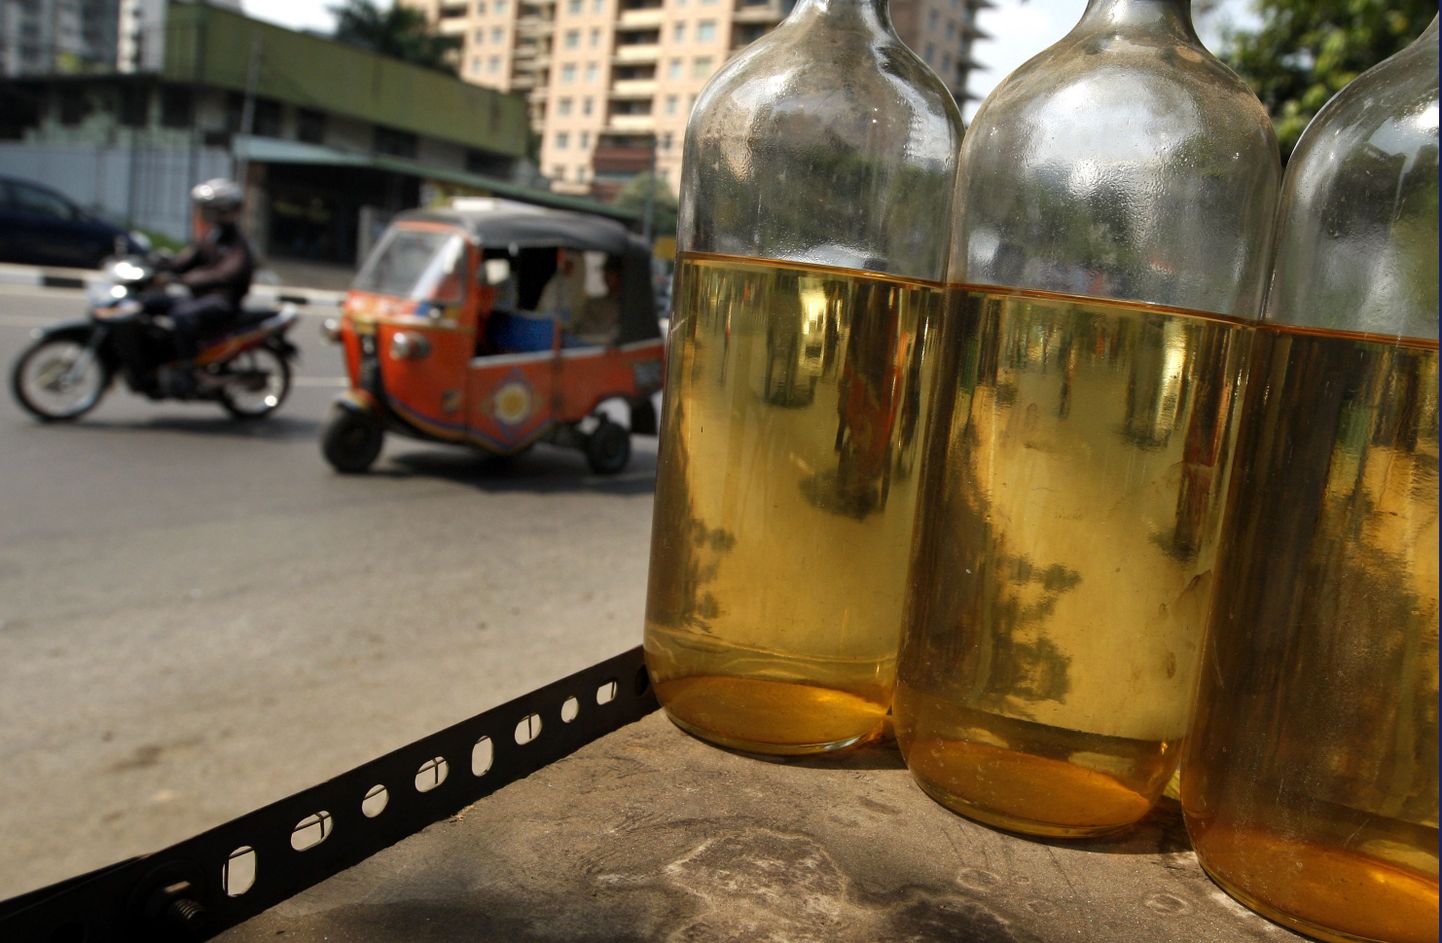 Jakarta tänaval müüakse bensiini liitristes pudelites. Pilt on tehtud Indoneesia pealinnas eile, 10. juulil.